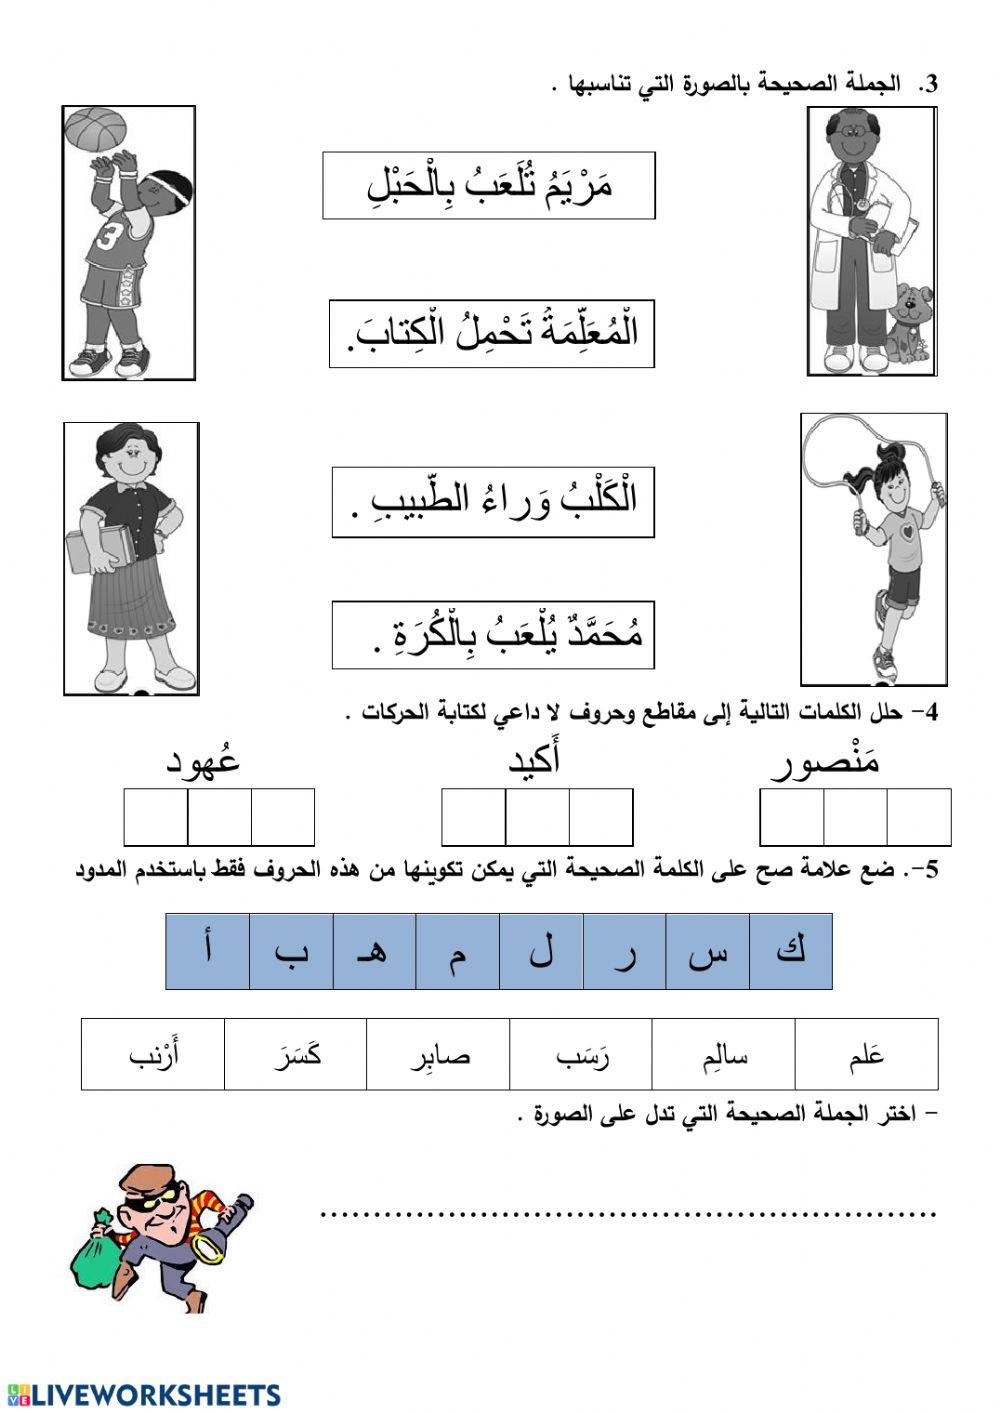 التطبيق رقم 2 في اللغة العربية